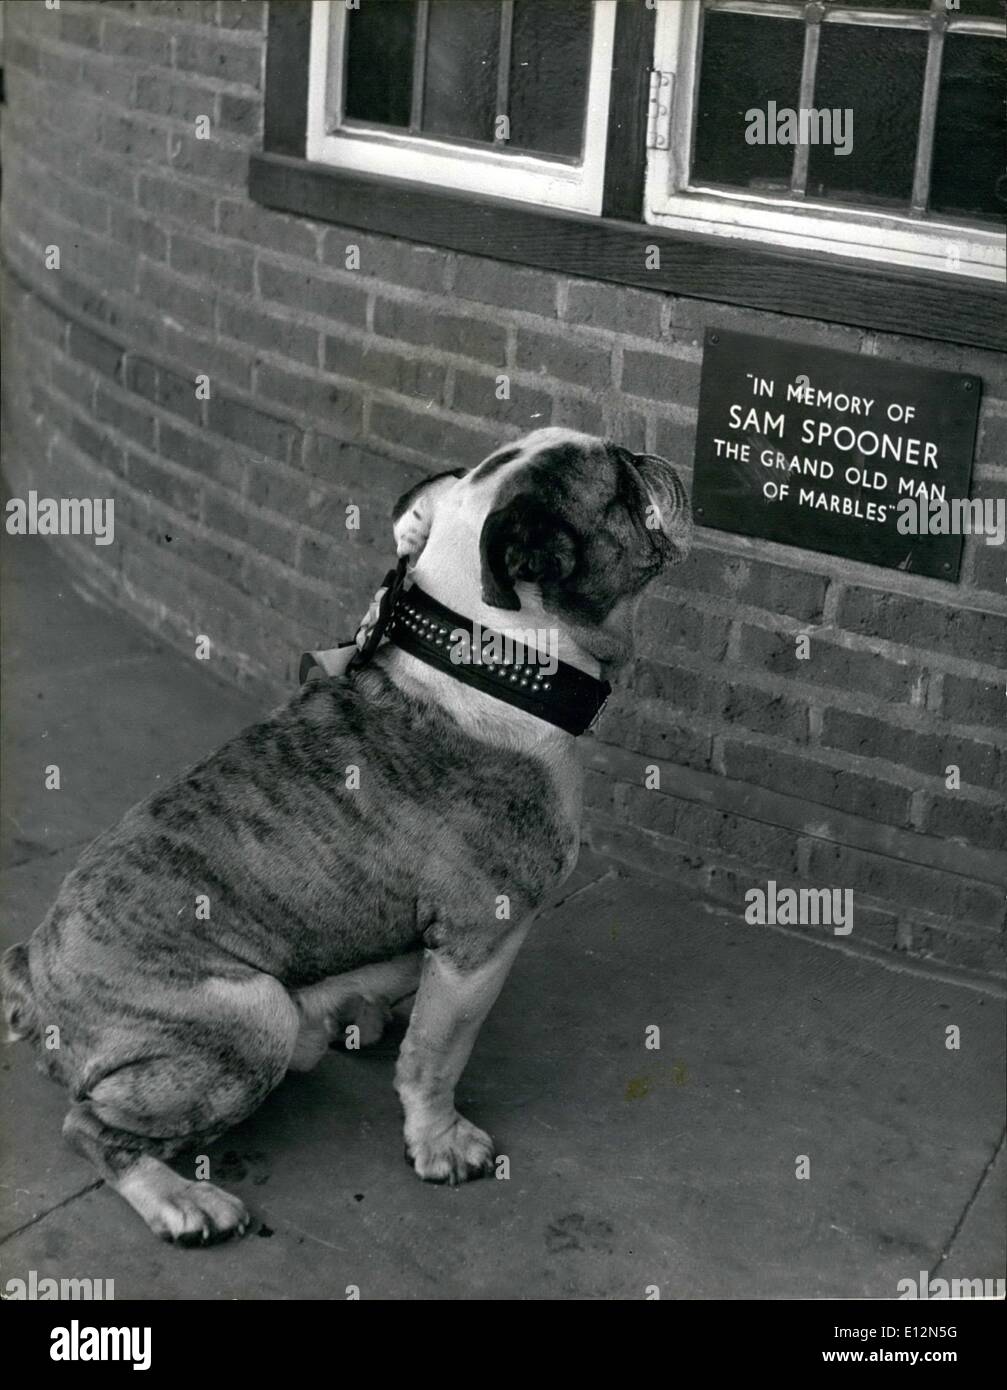 24 février 2012 - à la mémoire de l'G.O.M. de billes.:Winston le bulldog mascot se penche sur la plaque qui a été mis en place Banque D'Images